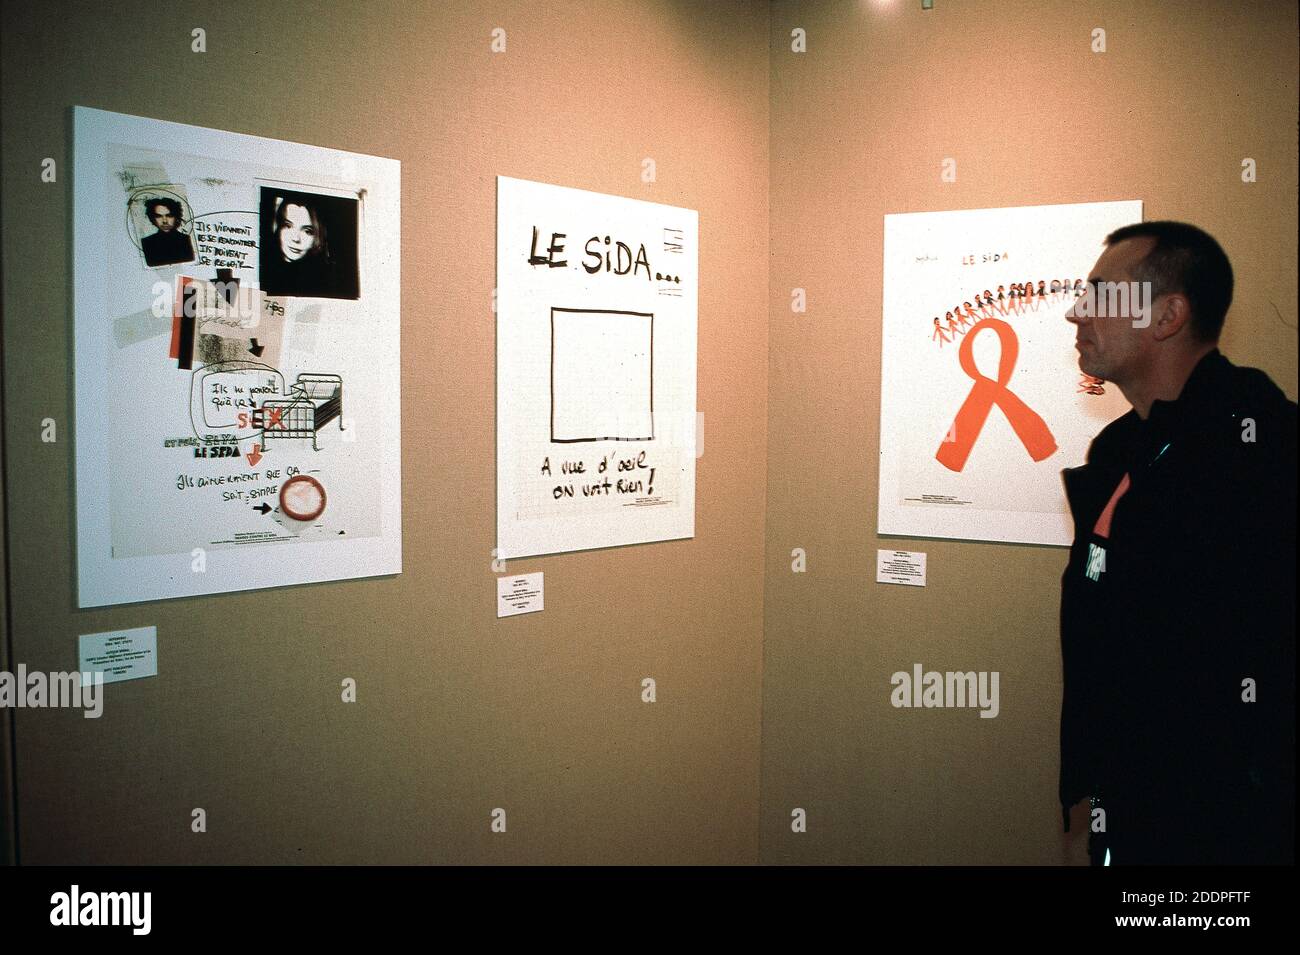 Paris, France, personnes regardant les affiches sur le SIDA sur le mur d'exposition à l'Hôtel de ville, exposition de la Journée mondiale du VIH/SIDA Banque D'Images